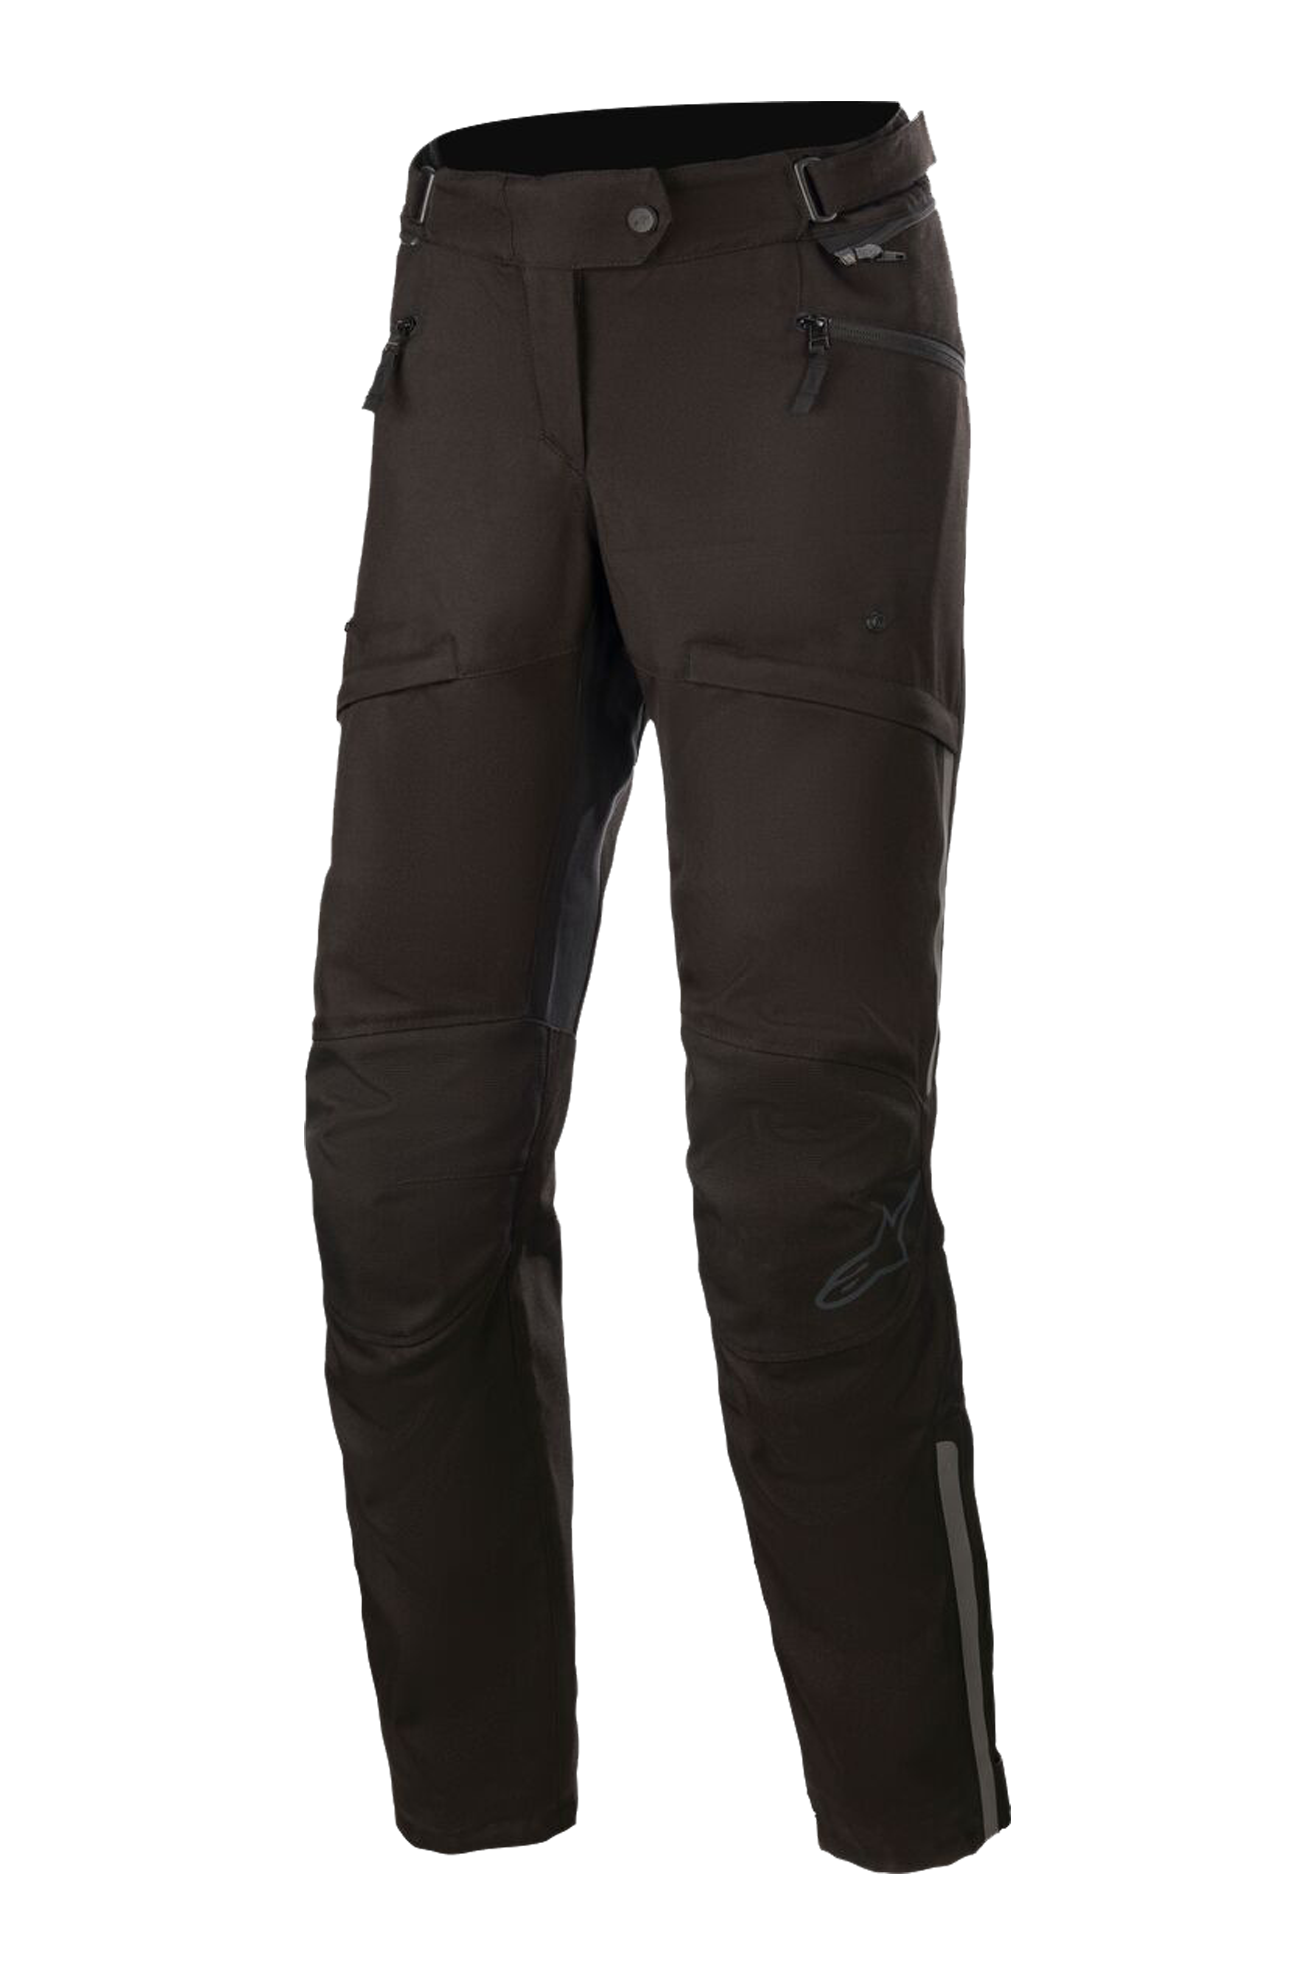 Alpinestars Pantalones de Moto para Mujer  Stella AST-1 V2 Impermeables Negros